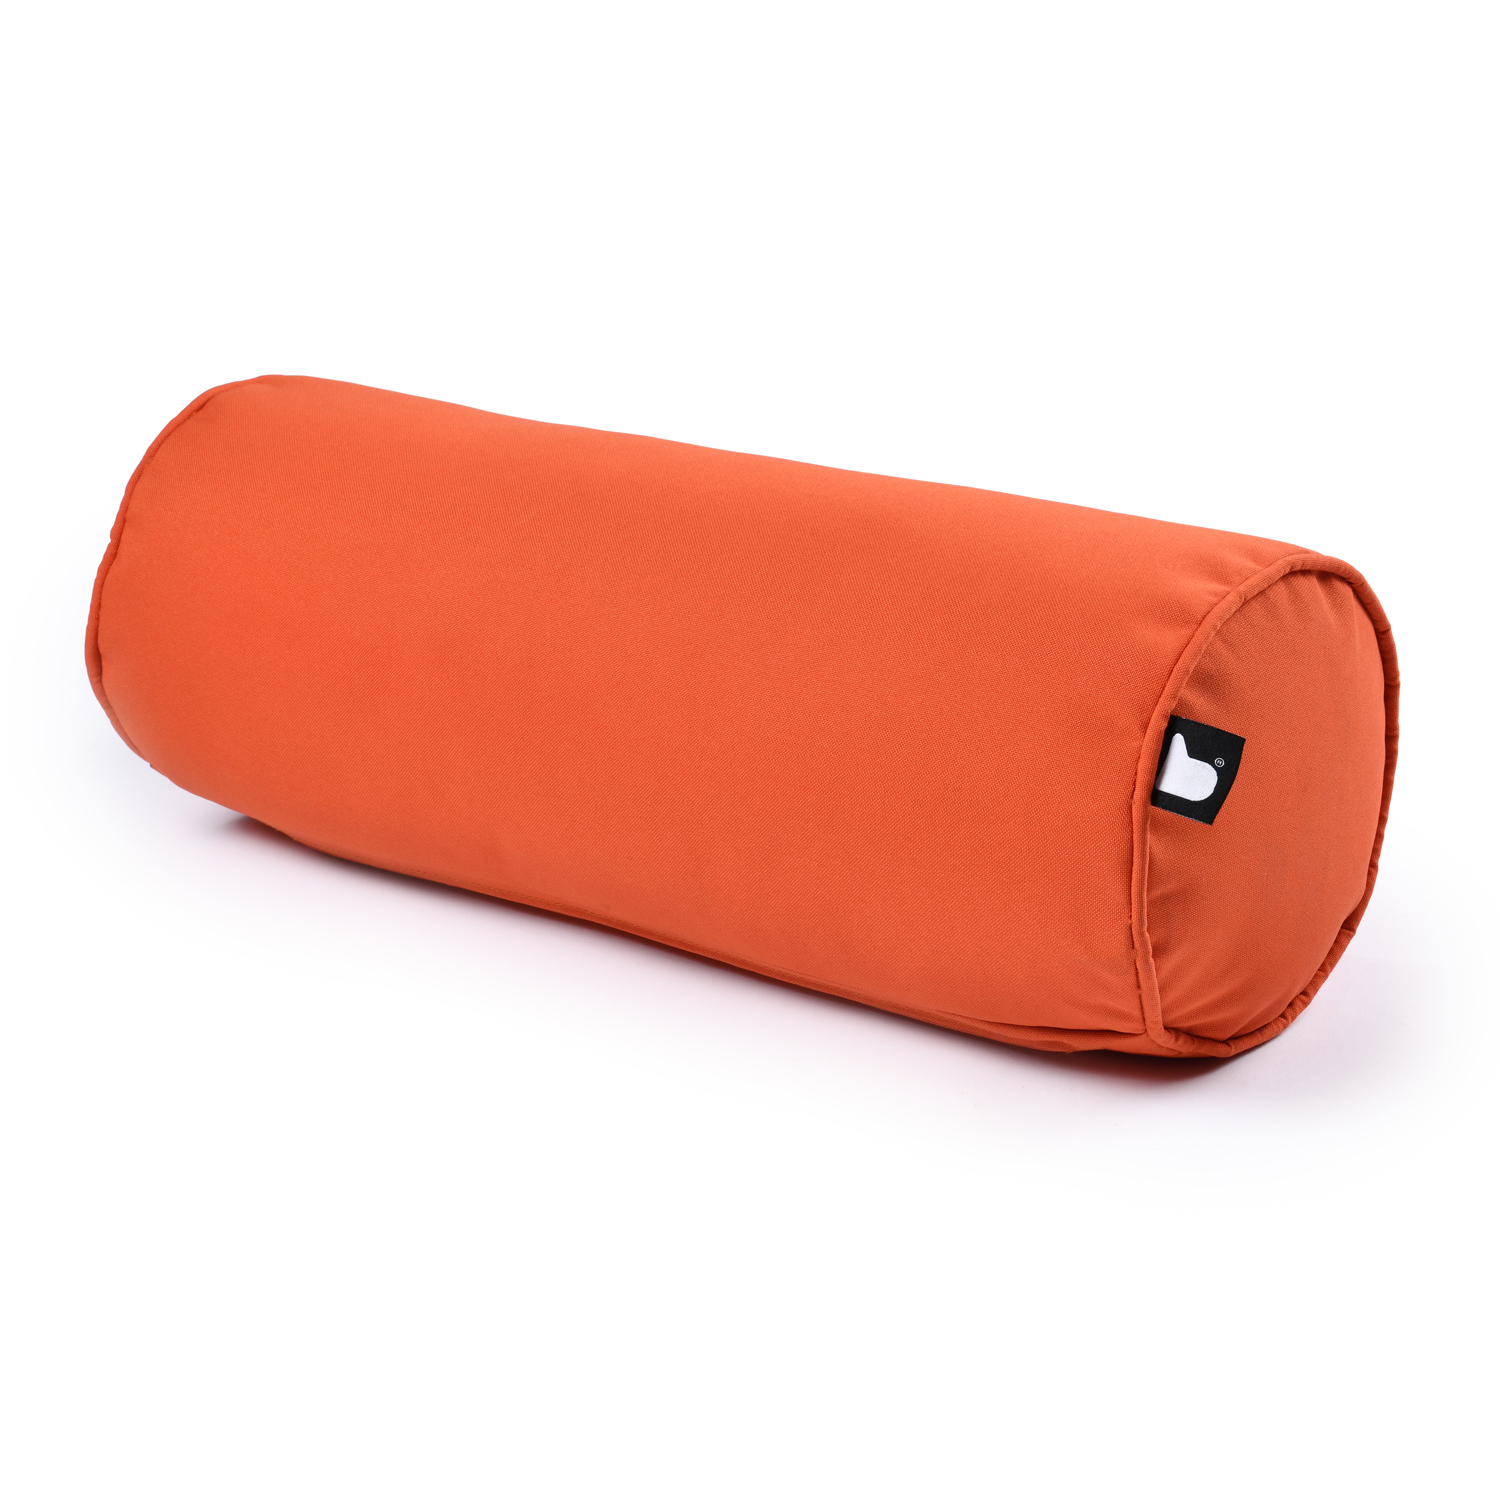 b-bolster extreme lounging Nackenrolle Orange 48cm breit wasserabweisend pflegeleicht UV-beständig